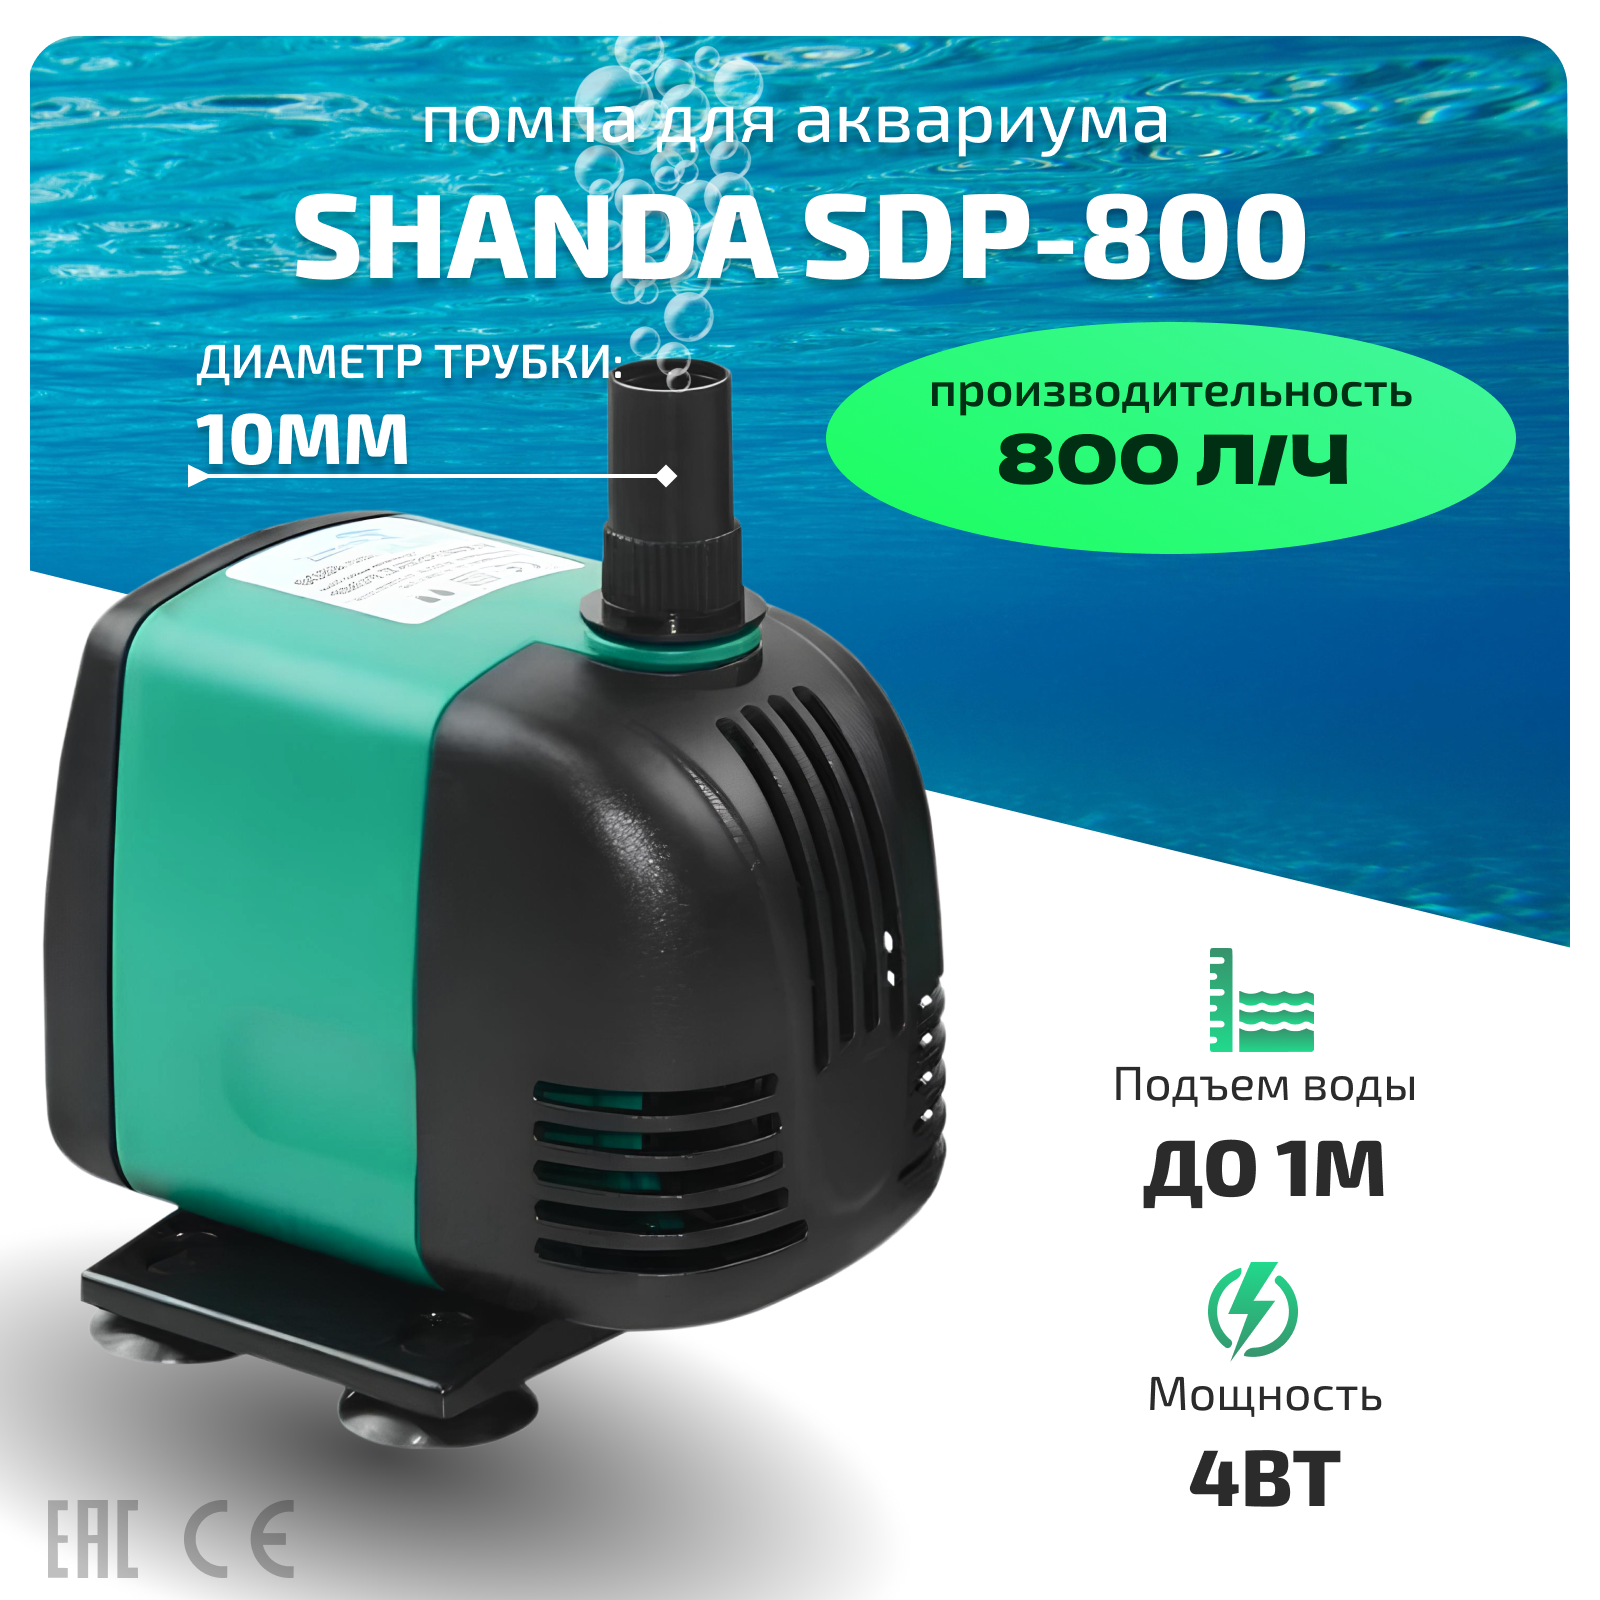 SHANDA SDP-800 Аквариумная подъемная помпа до 1м 800л/ч 4вт